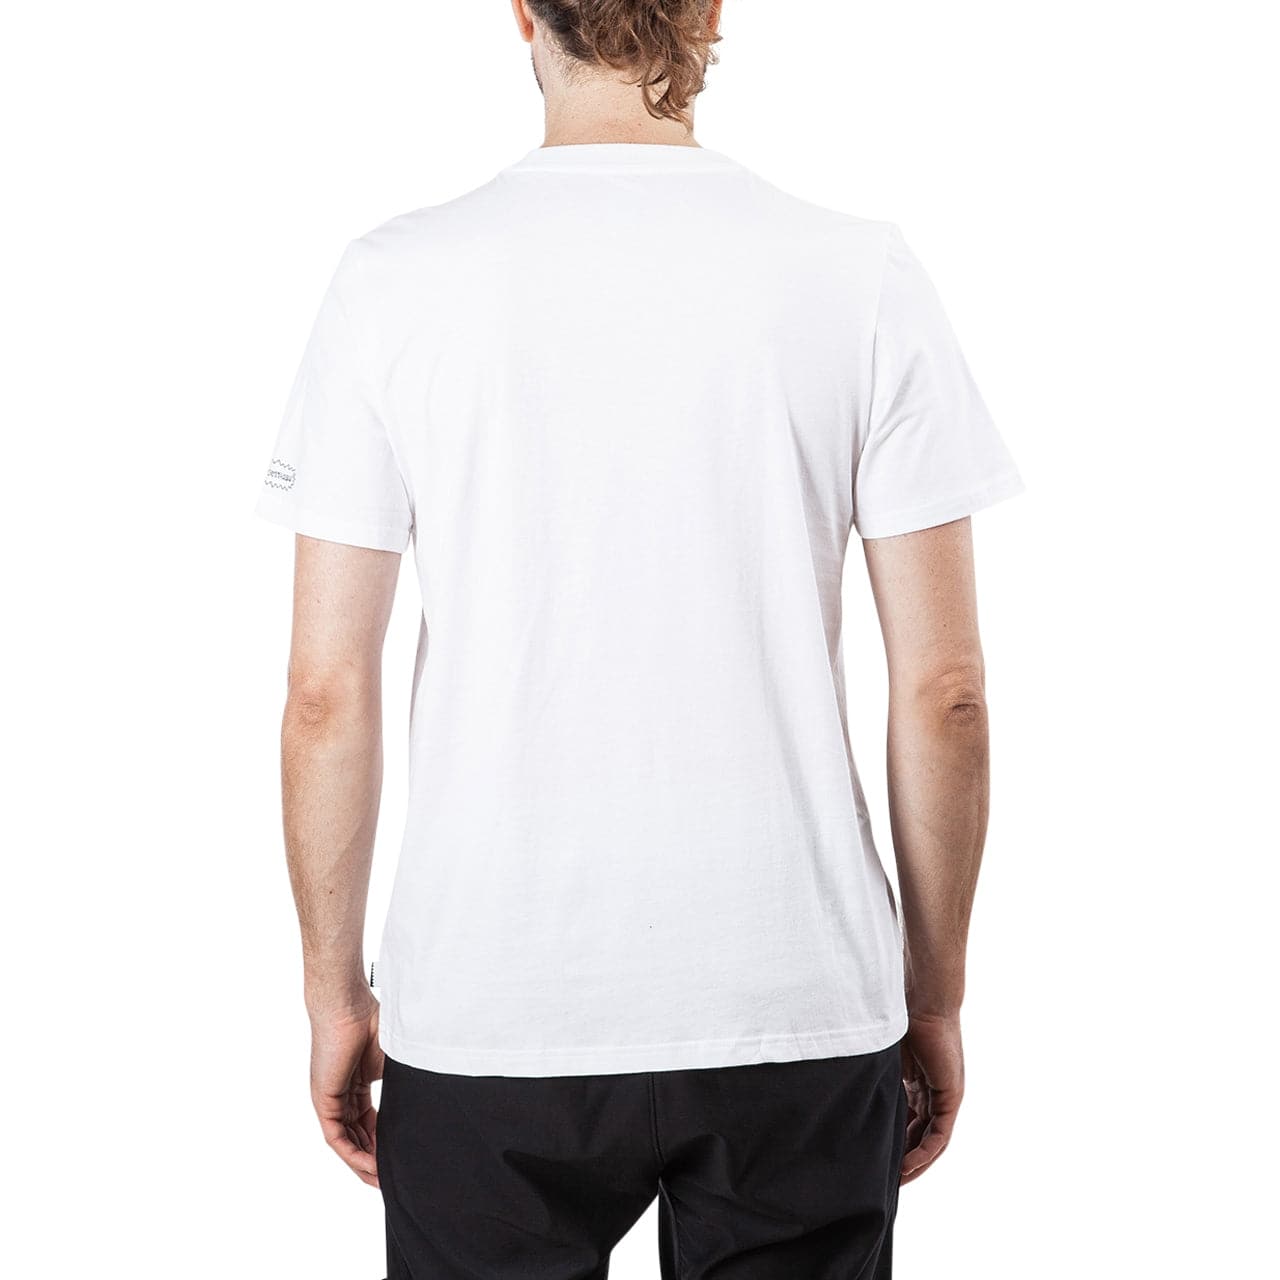 adidas x Beavis & Butthead Shirt (Weiß)  - Allike Store